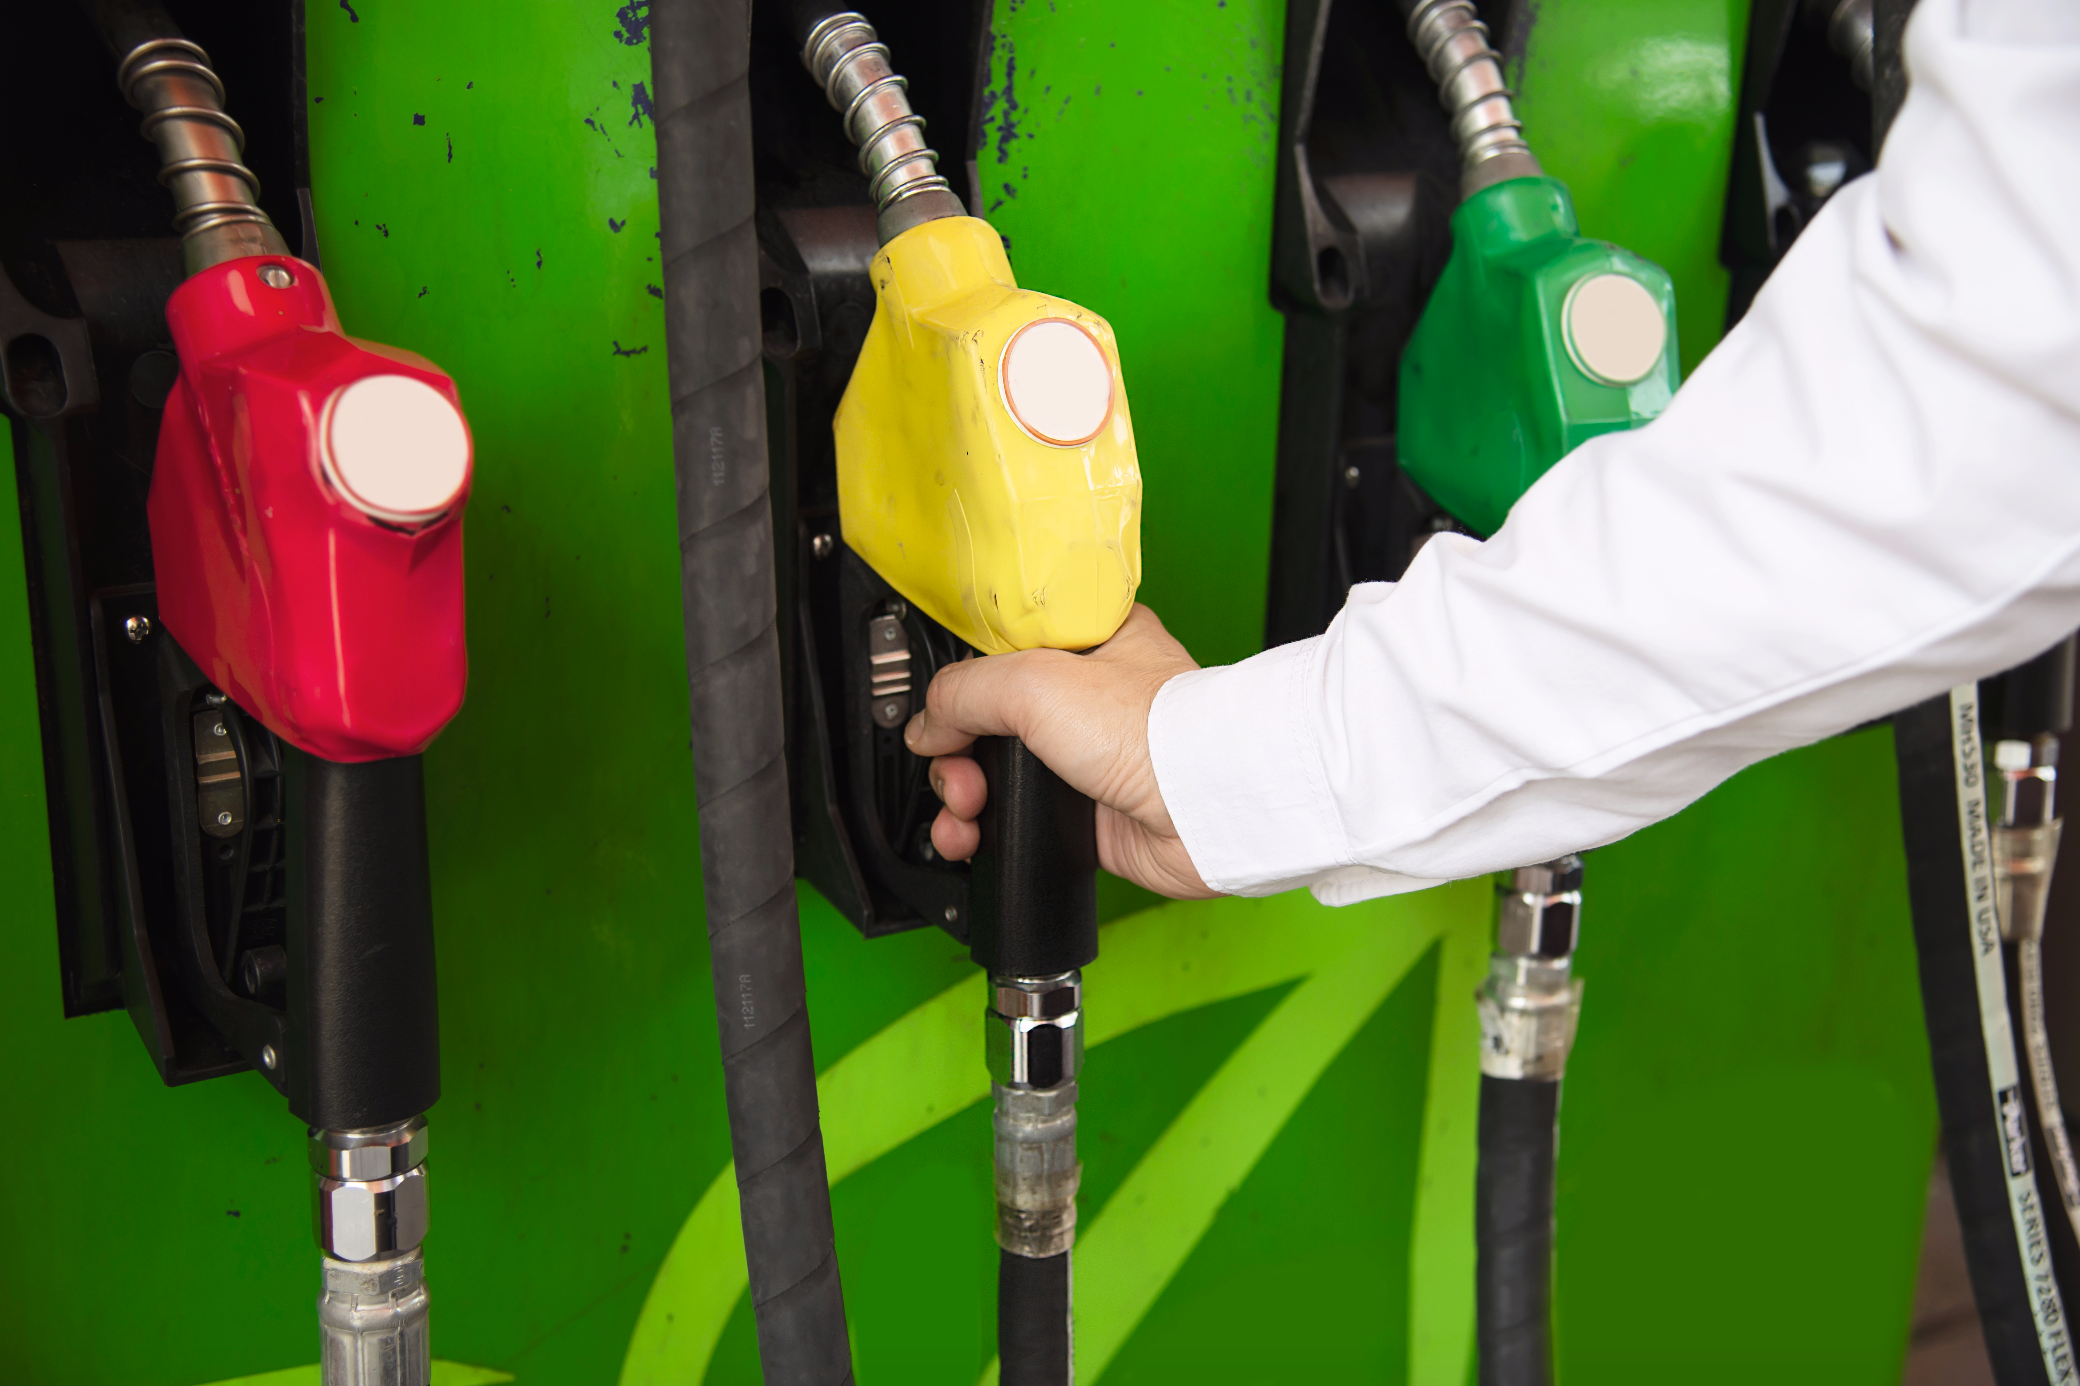 Bombilla de una estación de gasolina y 3 dispensadores de combustibles uno de color verde, otro amarillo y otro rojo, con una mano agarrando una